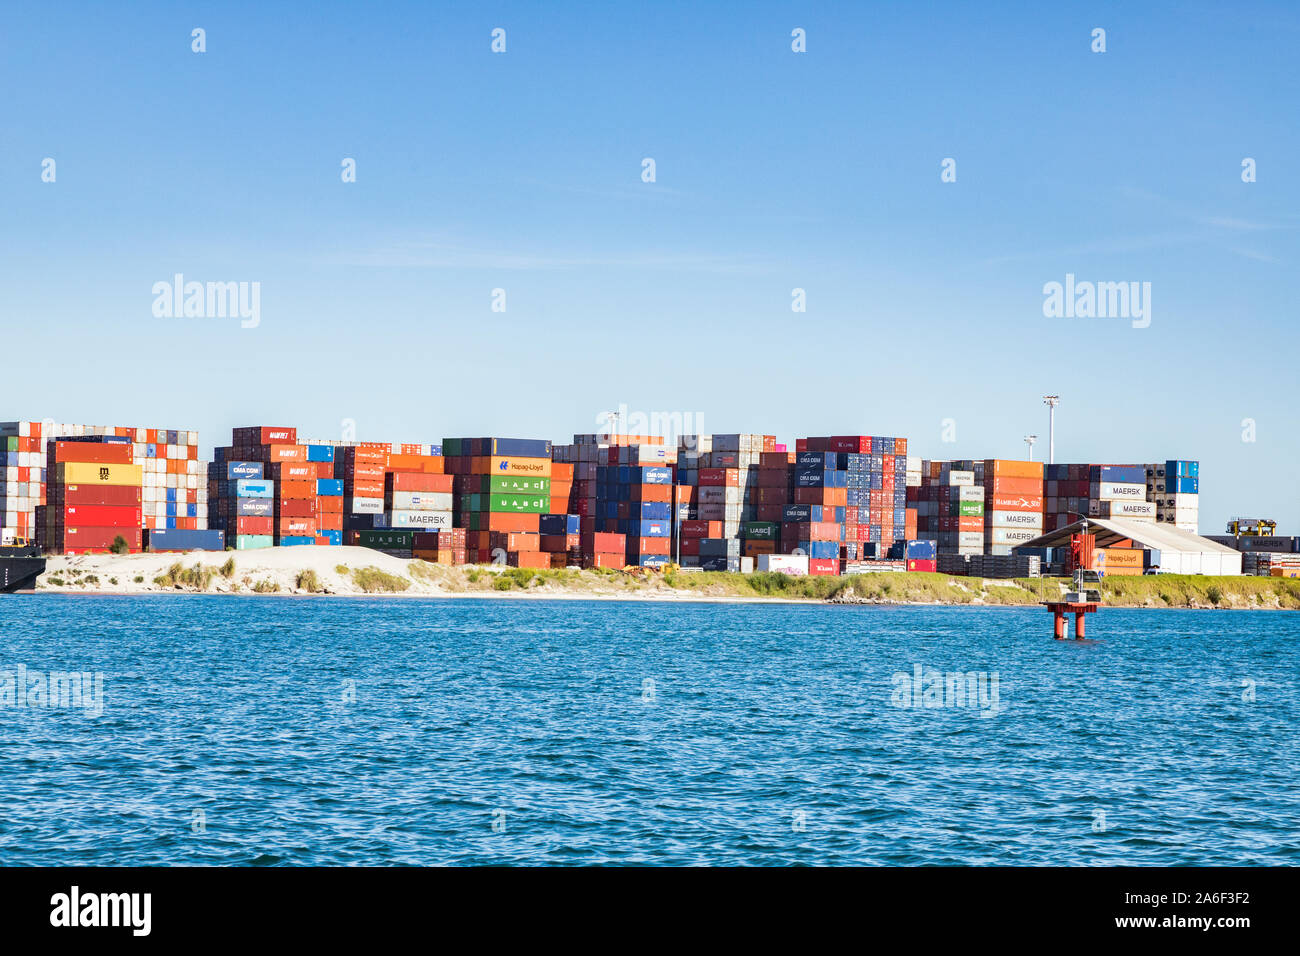 Vom 8. Dezember 2018: Tauranga, Bay of Plenty, Neuseeland - gestapelte Container im größten Hafen des Landes. Stockfoto